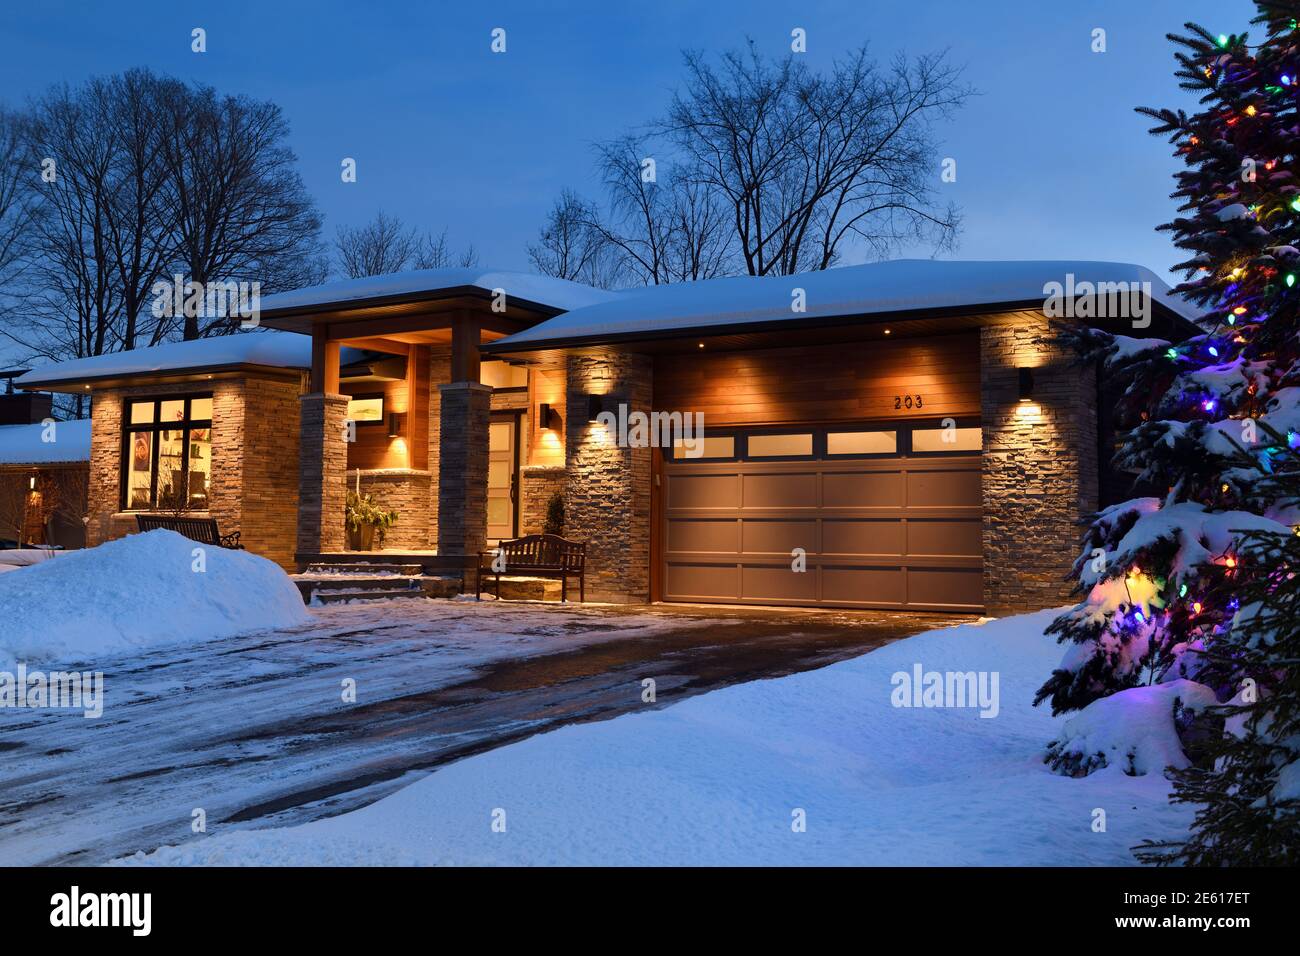 Casa moderna cubierta de nieve en Ontario, Canadá, con luces navideñas en invierno Foto de stock